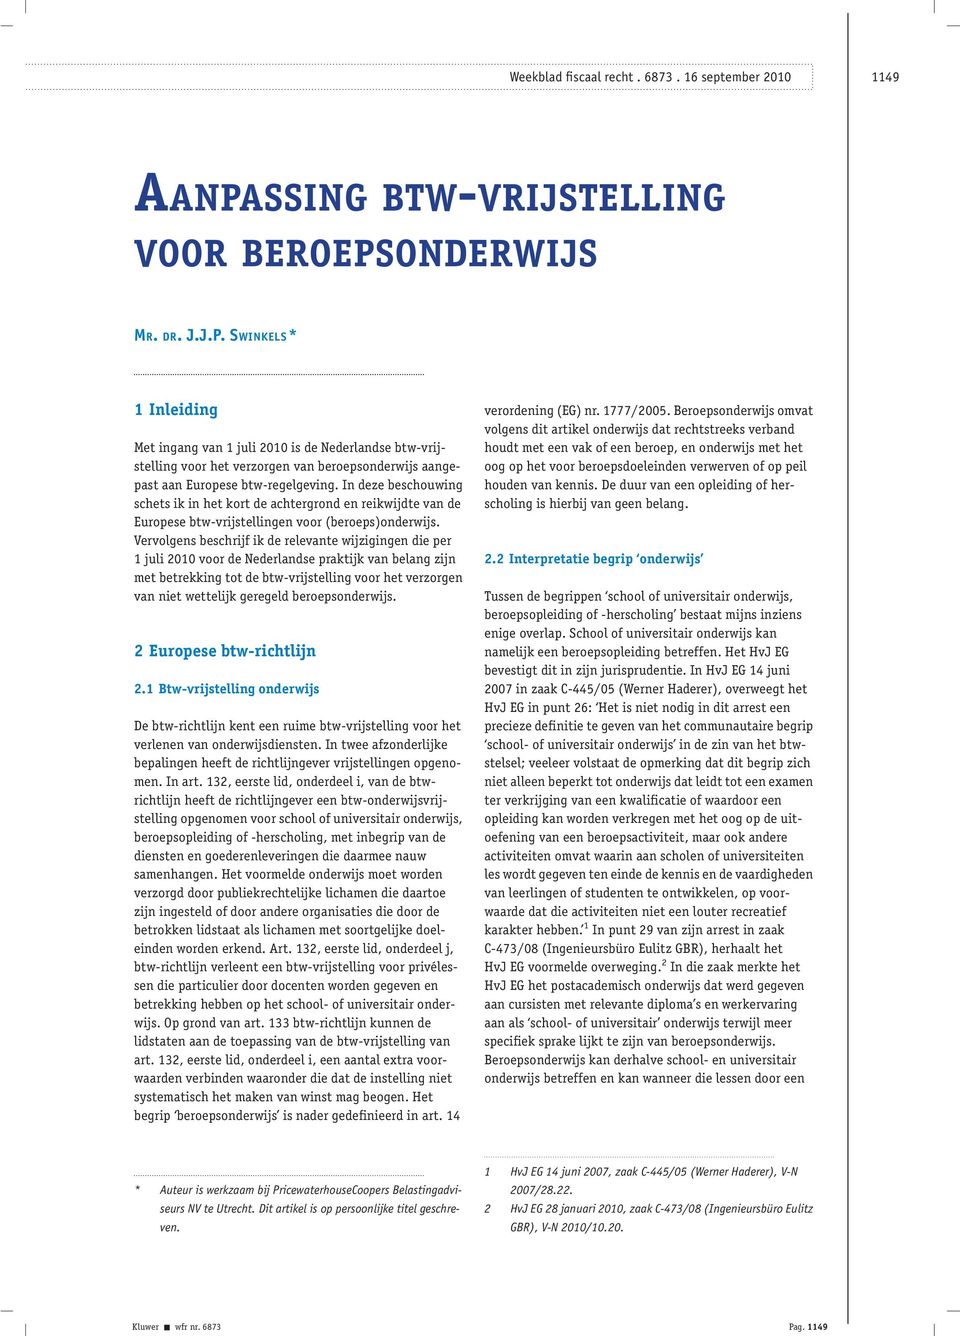 Vervolgens beschrijf ik de relevante wijzigingen die per 1 juli 2010 voor de Nederlandse praktijk van belang zijn met betrekking tot de btw-vrijstelling voor het verzorgen van niet wettelijk geregeld